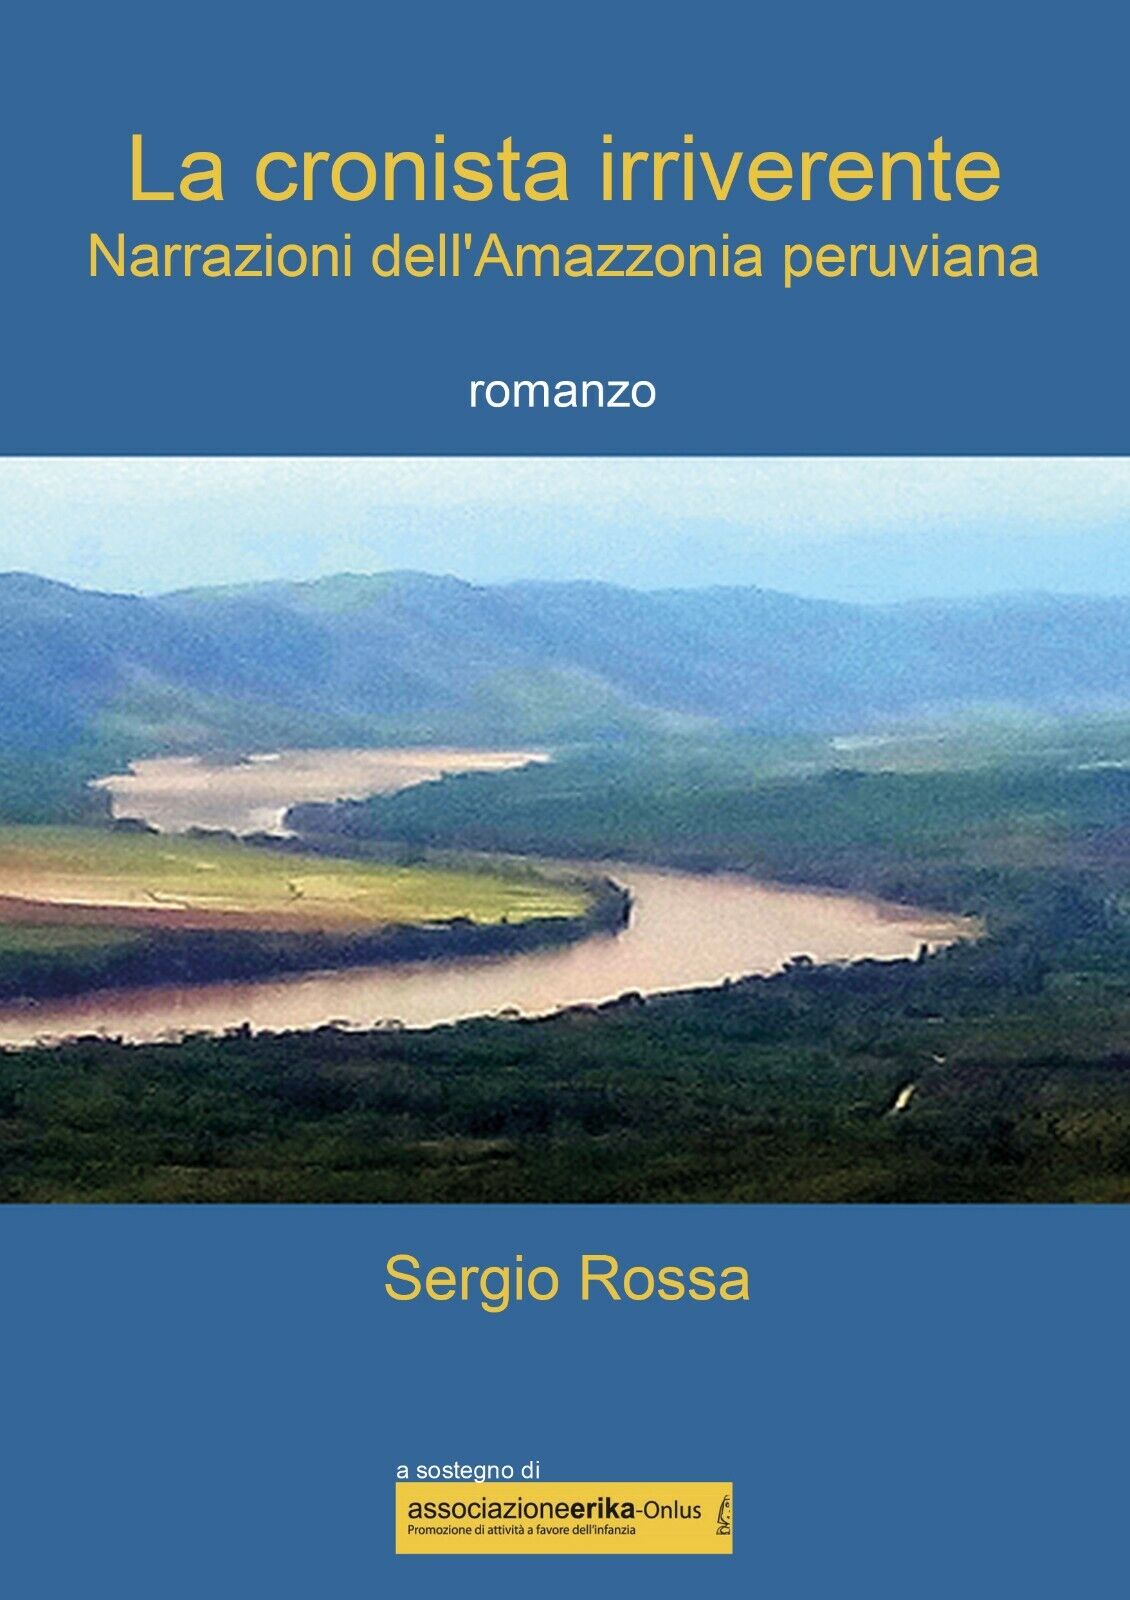 La cronista irriverente - Narrazioni delL'Amazzonia peruviana di Sergio Rossa,  